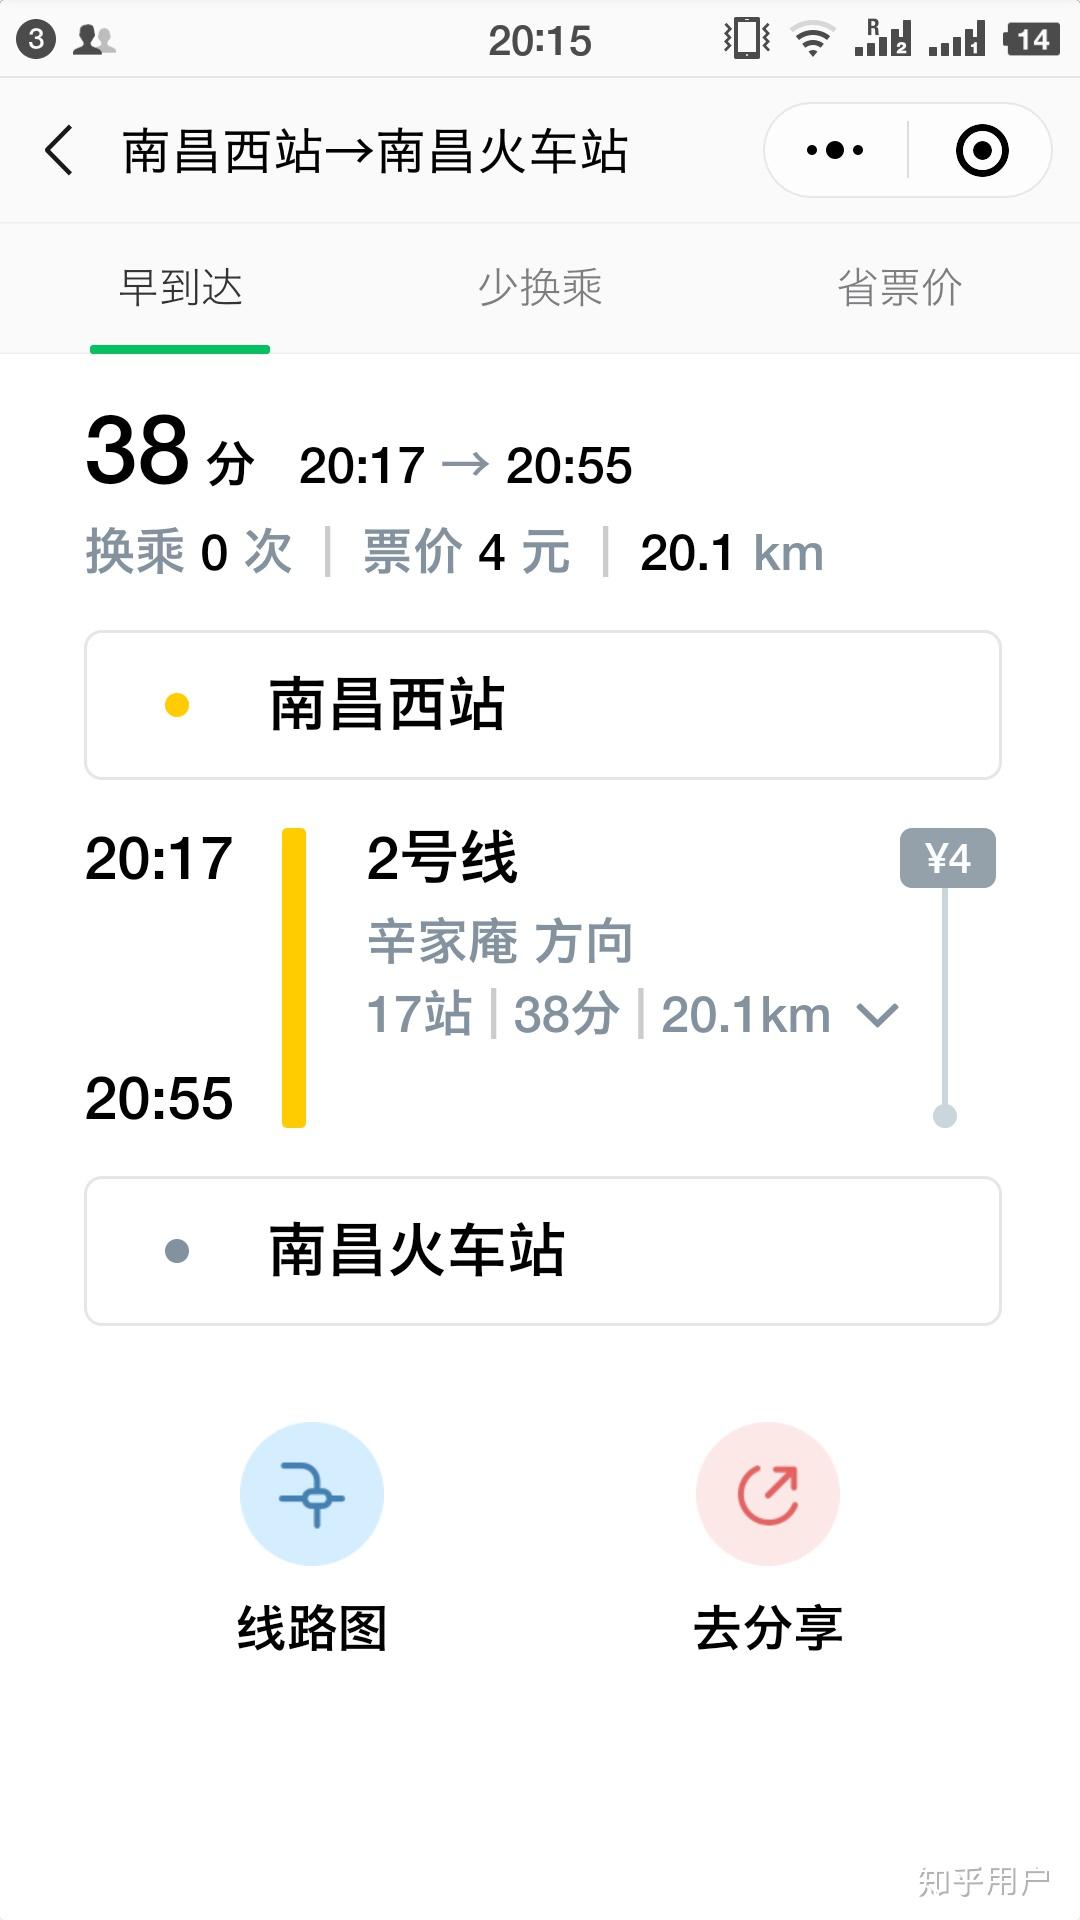 南昌南昌地铁南昌西站到南昌站包含进出站两个小时小时够吗?